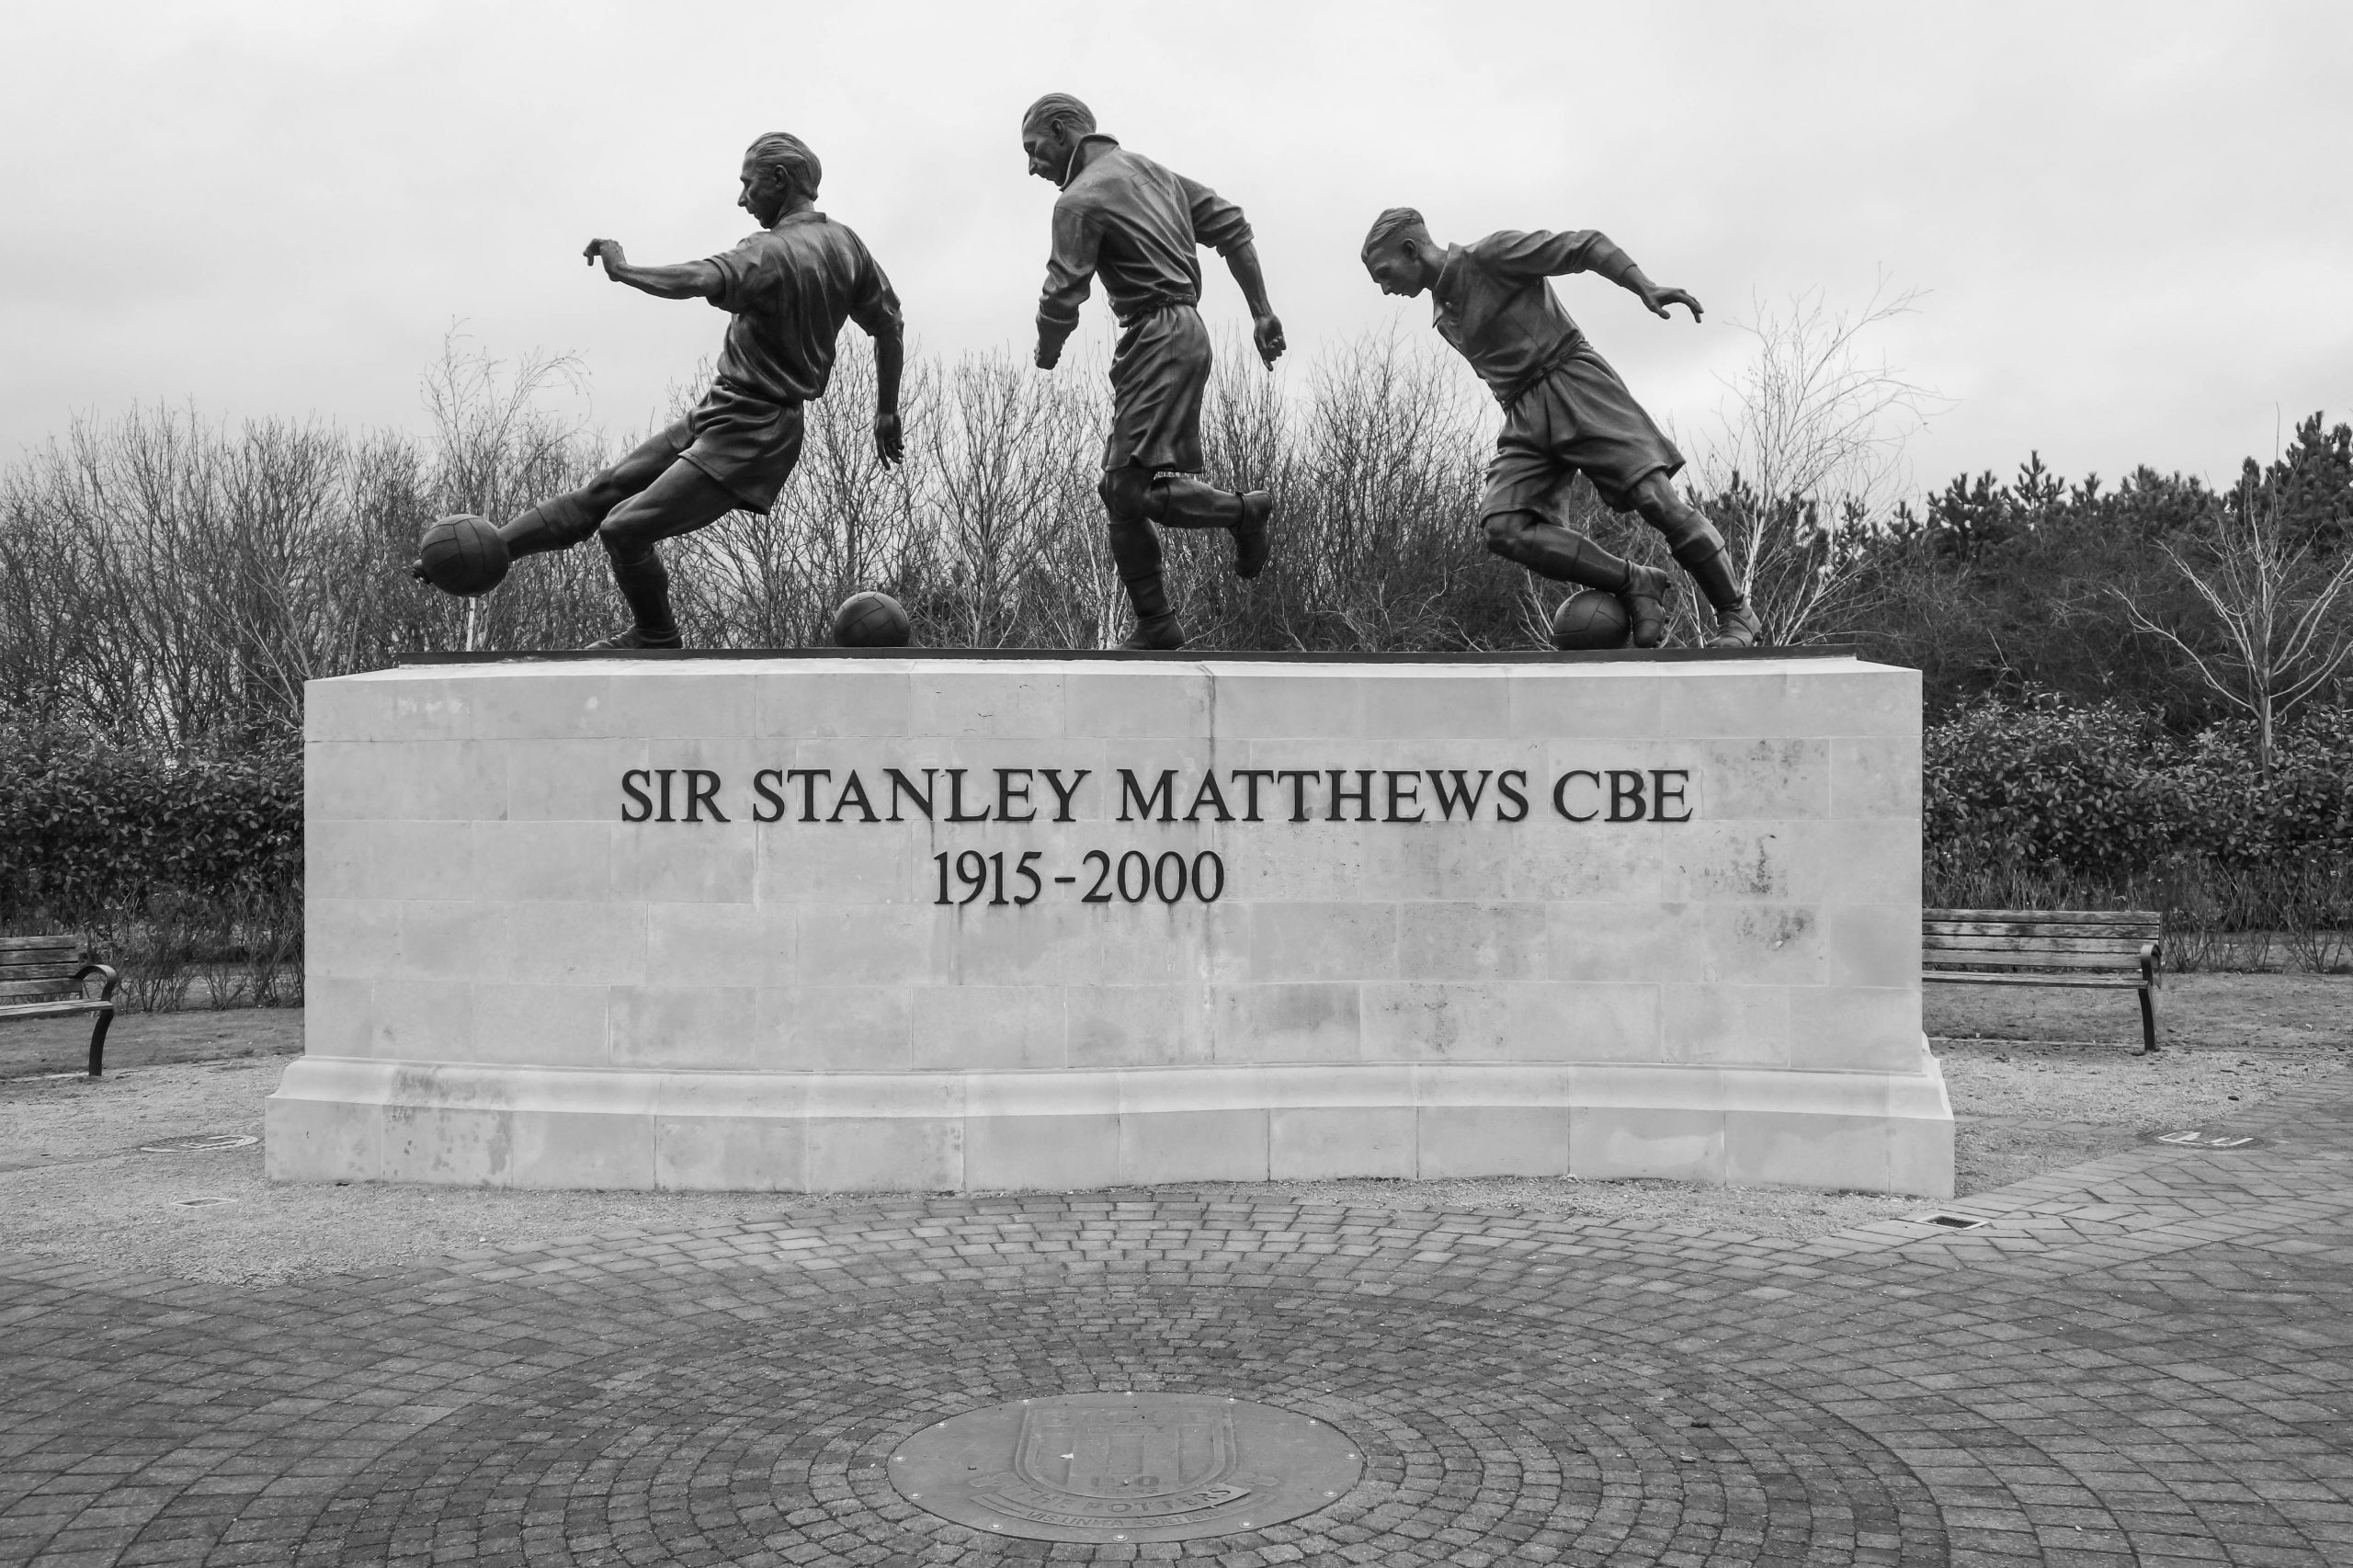 Stanley Matthews